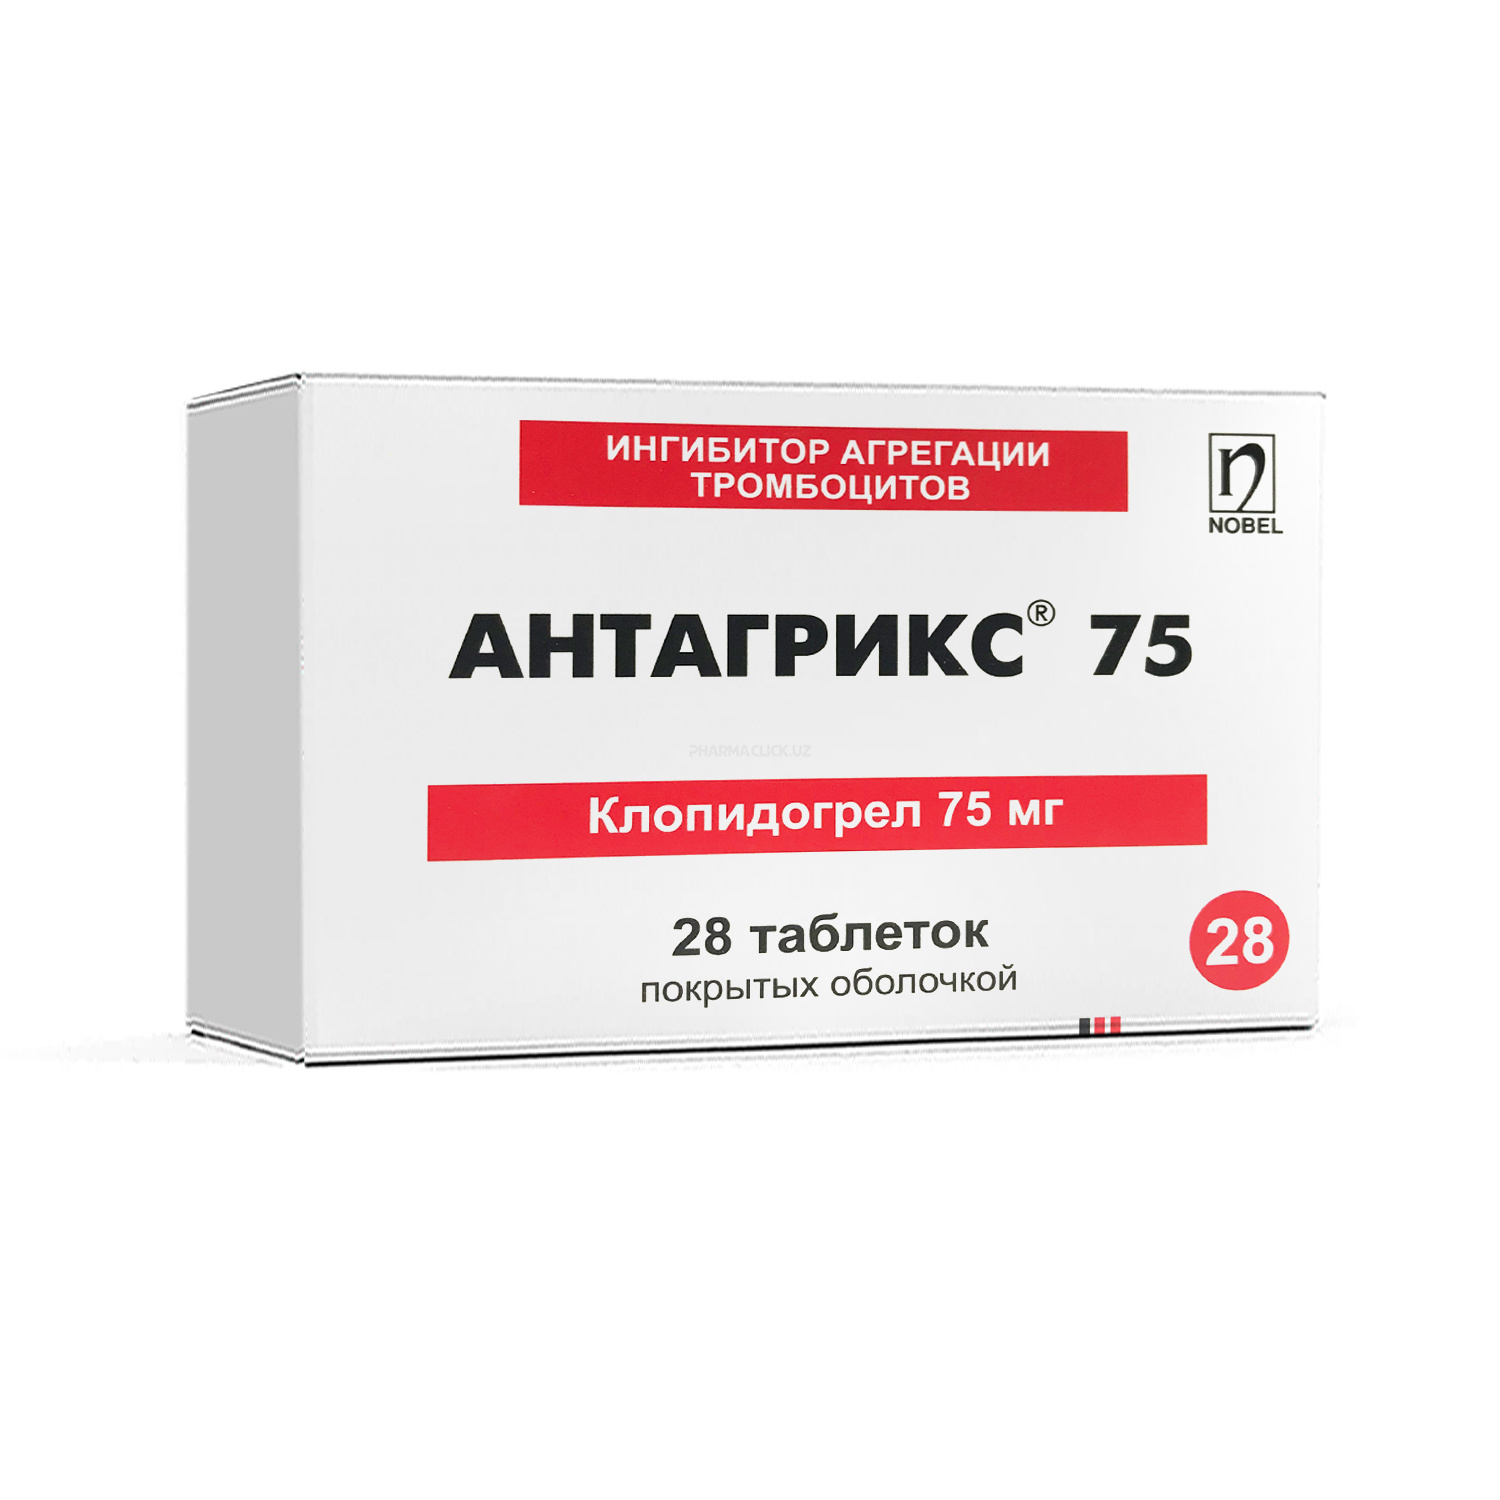 Antagriks 75 mg tabletkalar №28